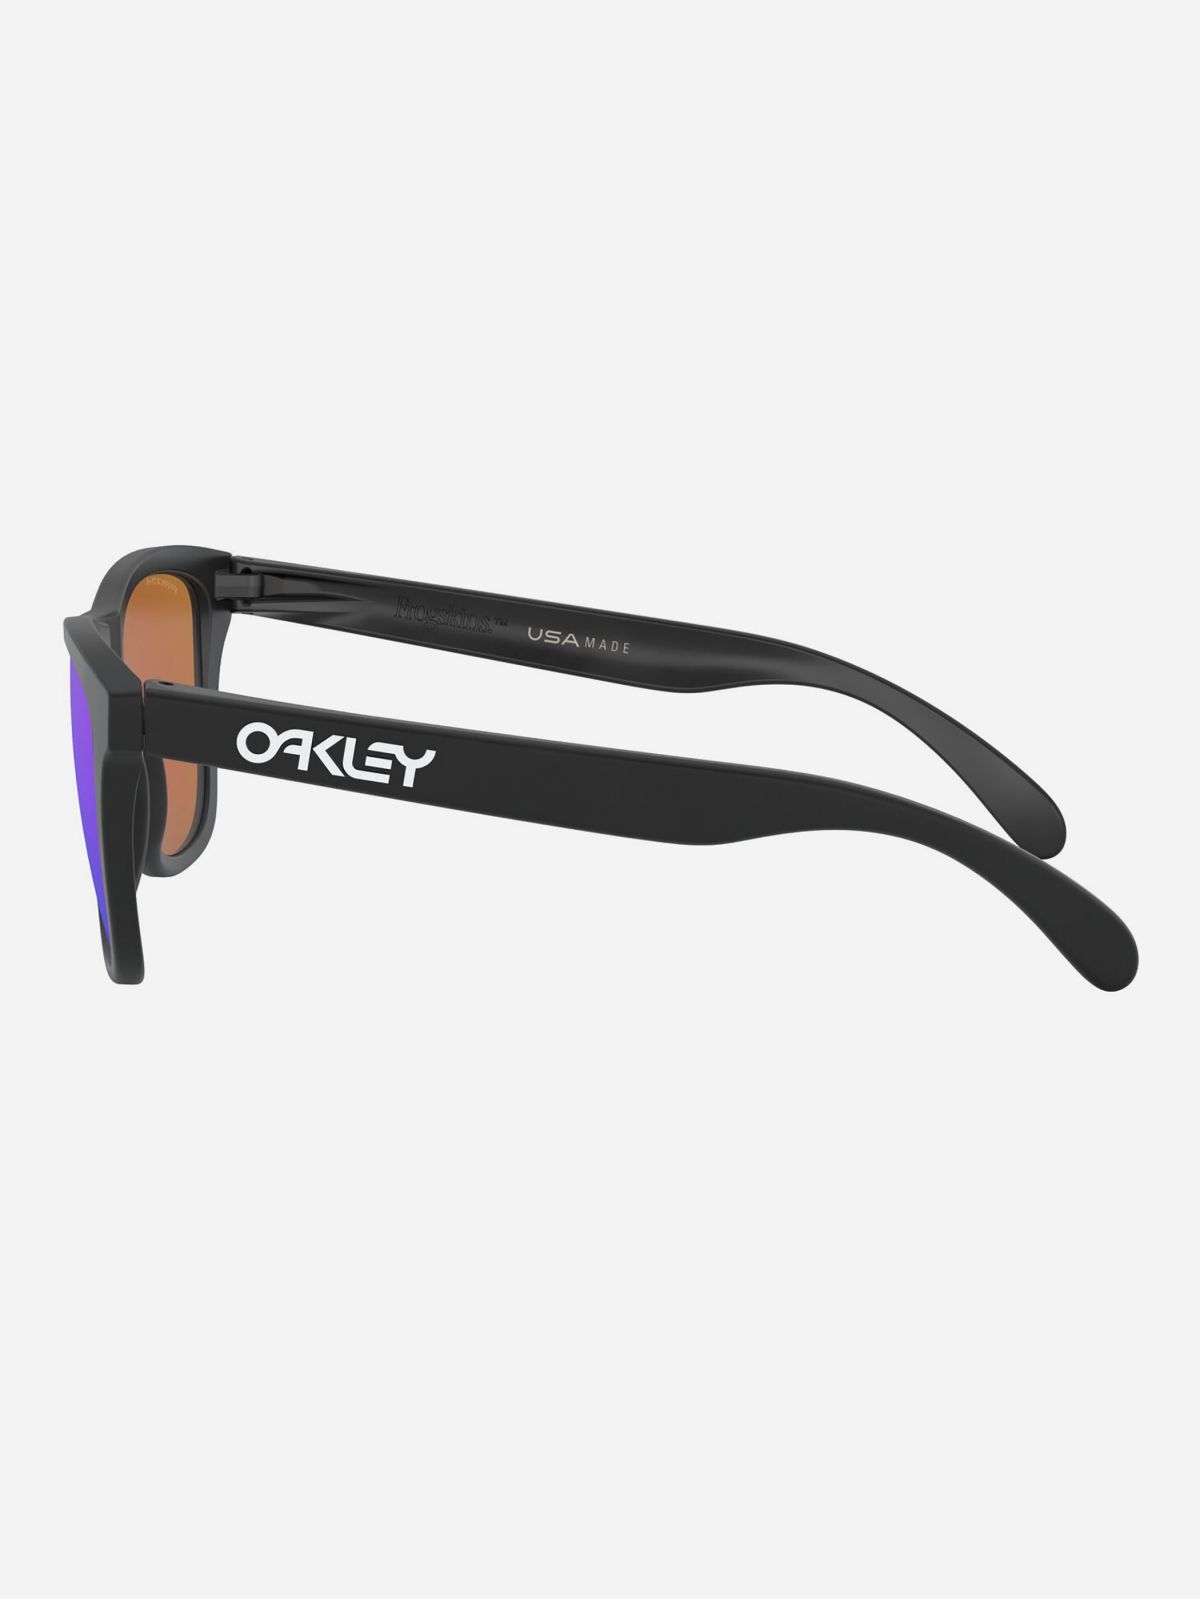  משקפי שמש מלבניים עם מסגרת פלסטיק של OAKLEY